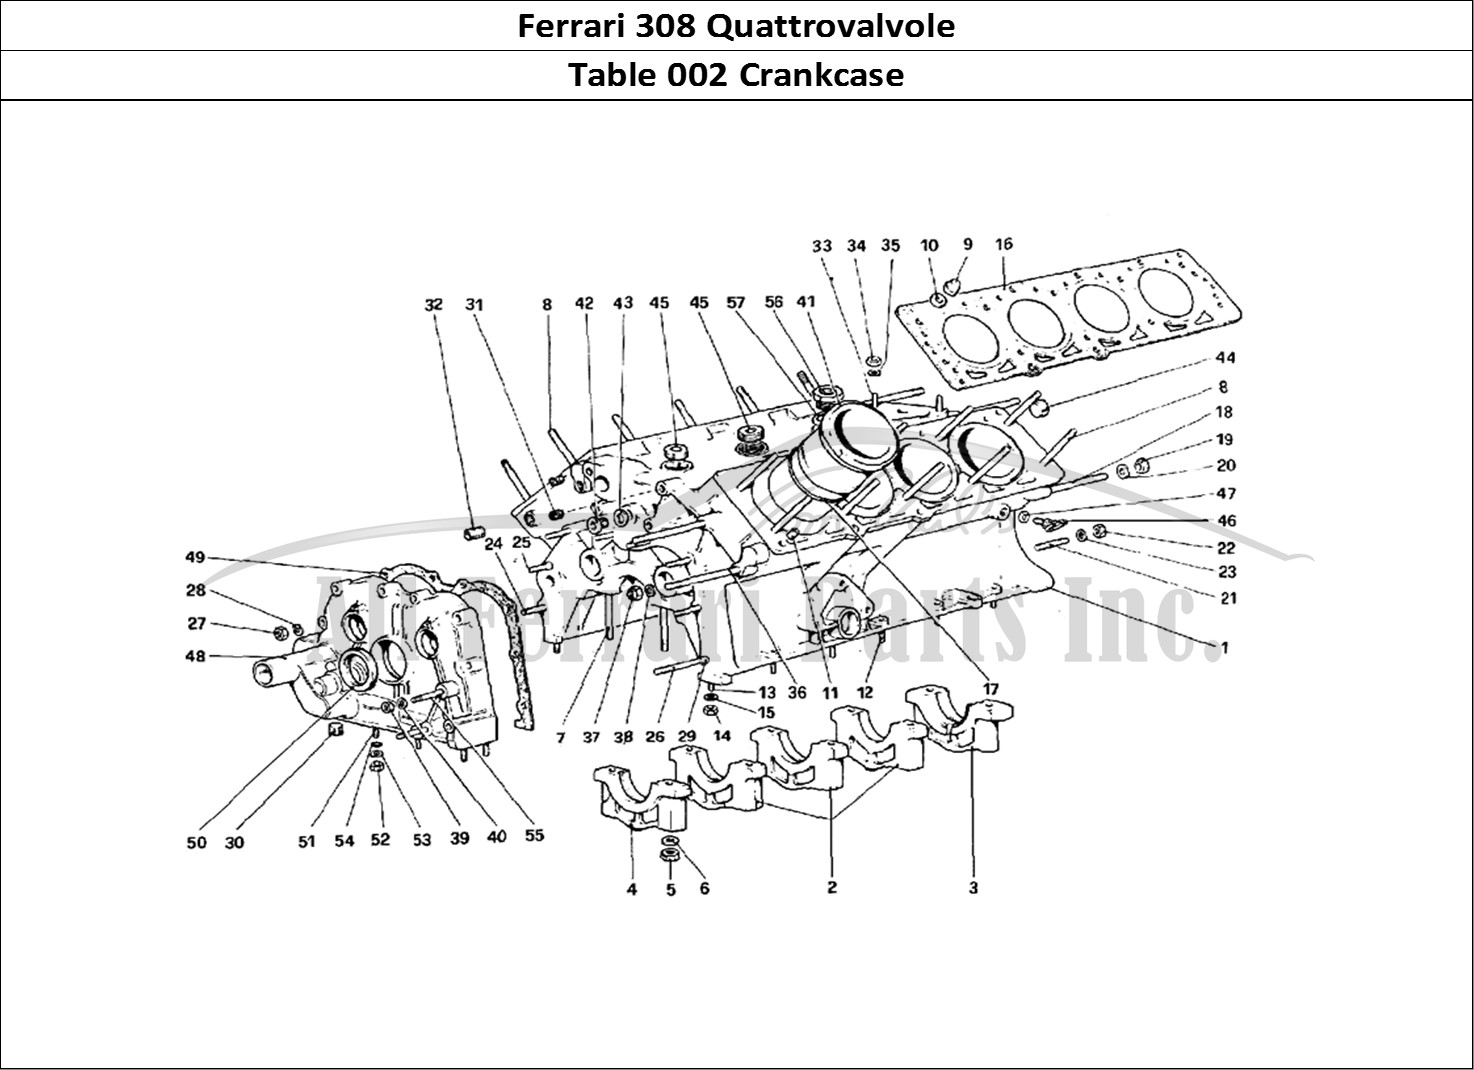 Ferrari Parts Ferrari 308 Quattrovalvole (1985) Page 002 Crankcase